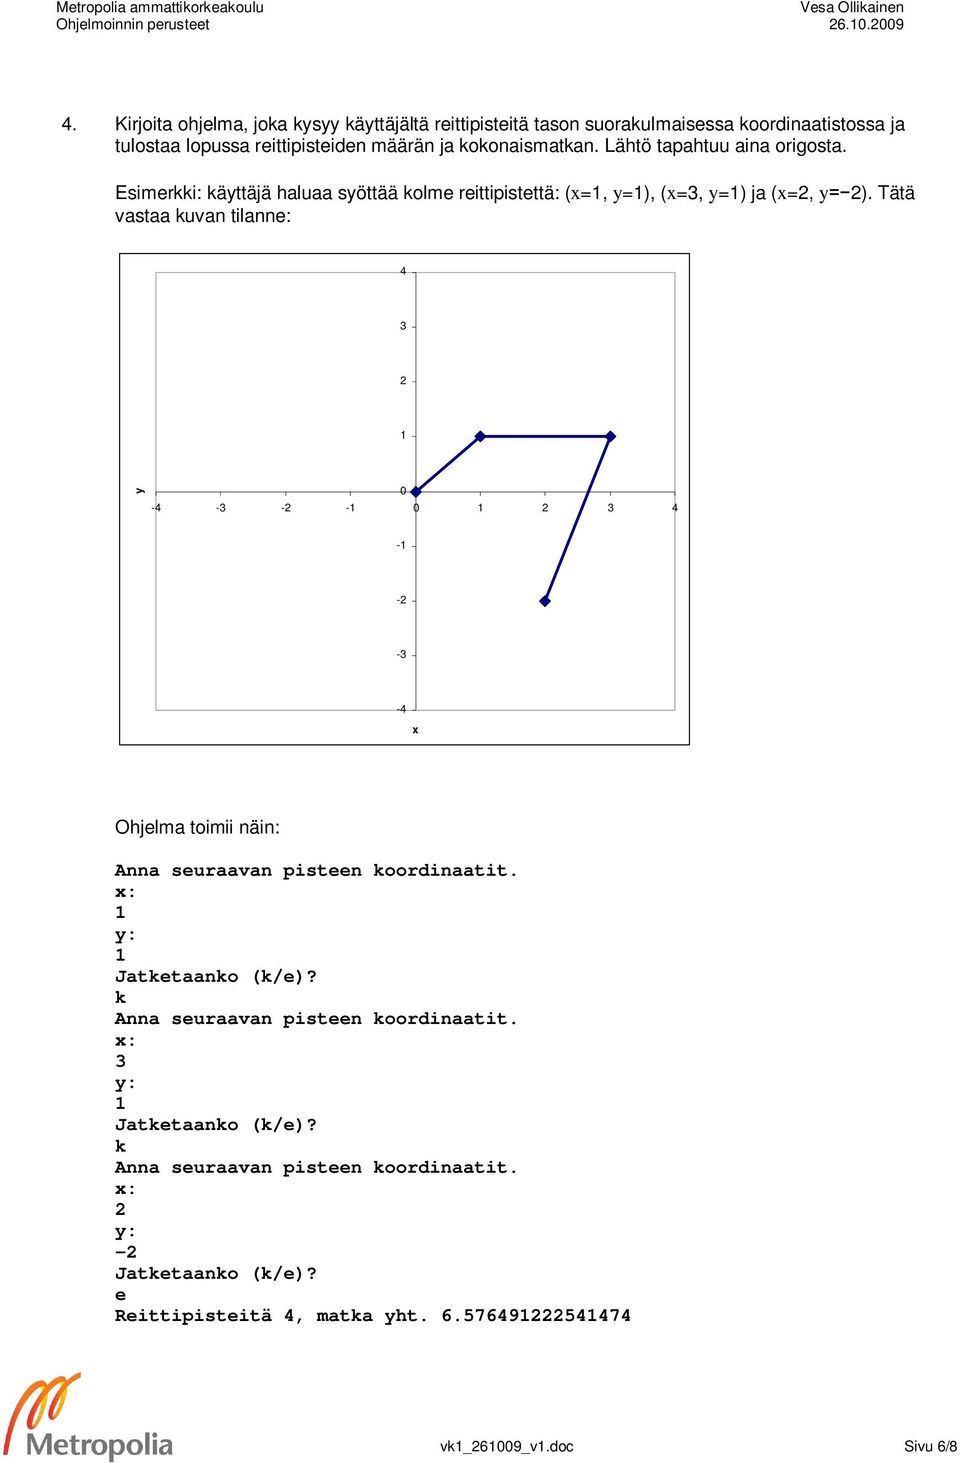 Tätä vastaa kuvan tilanne: 4 3 y 0-4 -3 - - 0 3 4 - - -3-4 x Ohjelma toimii näin: Anna seuraavan pisteen koordinaatit. x: y: Jatketaanko (k/e)?